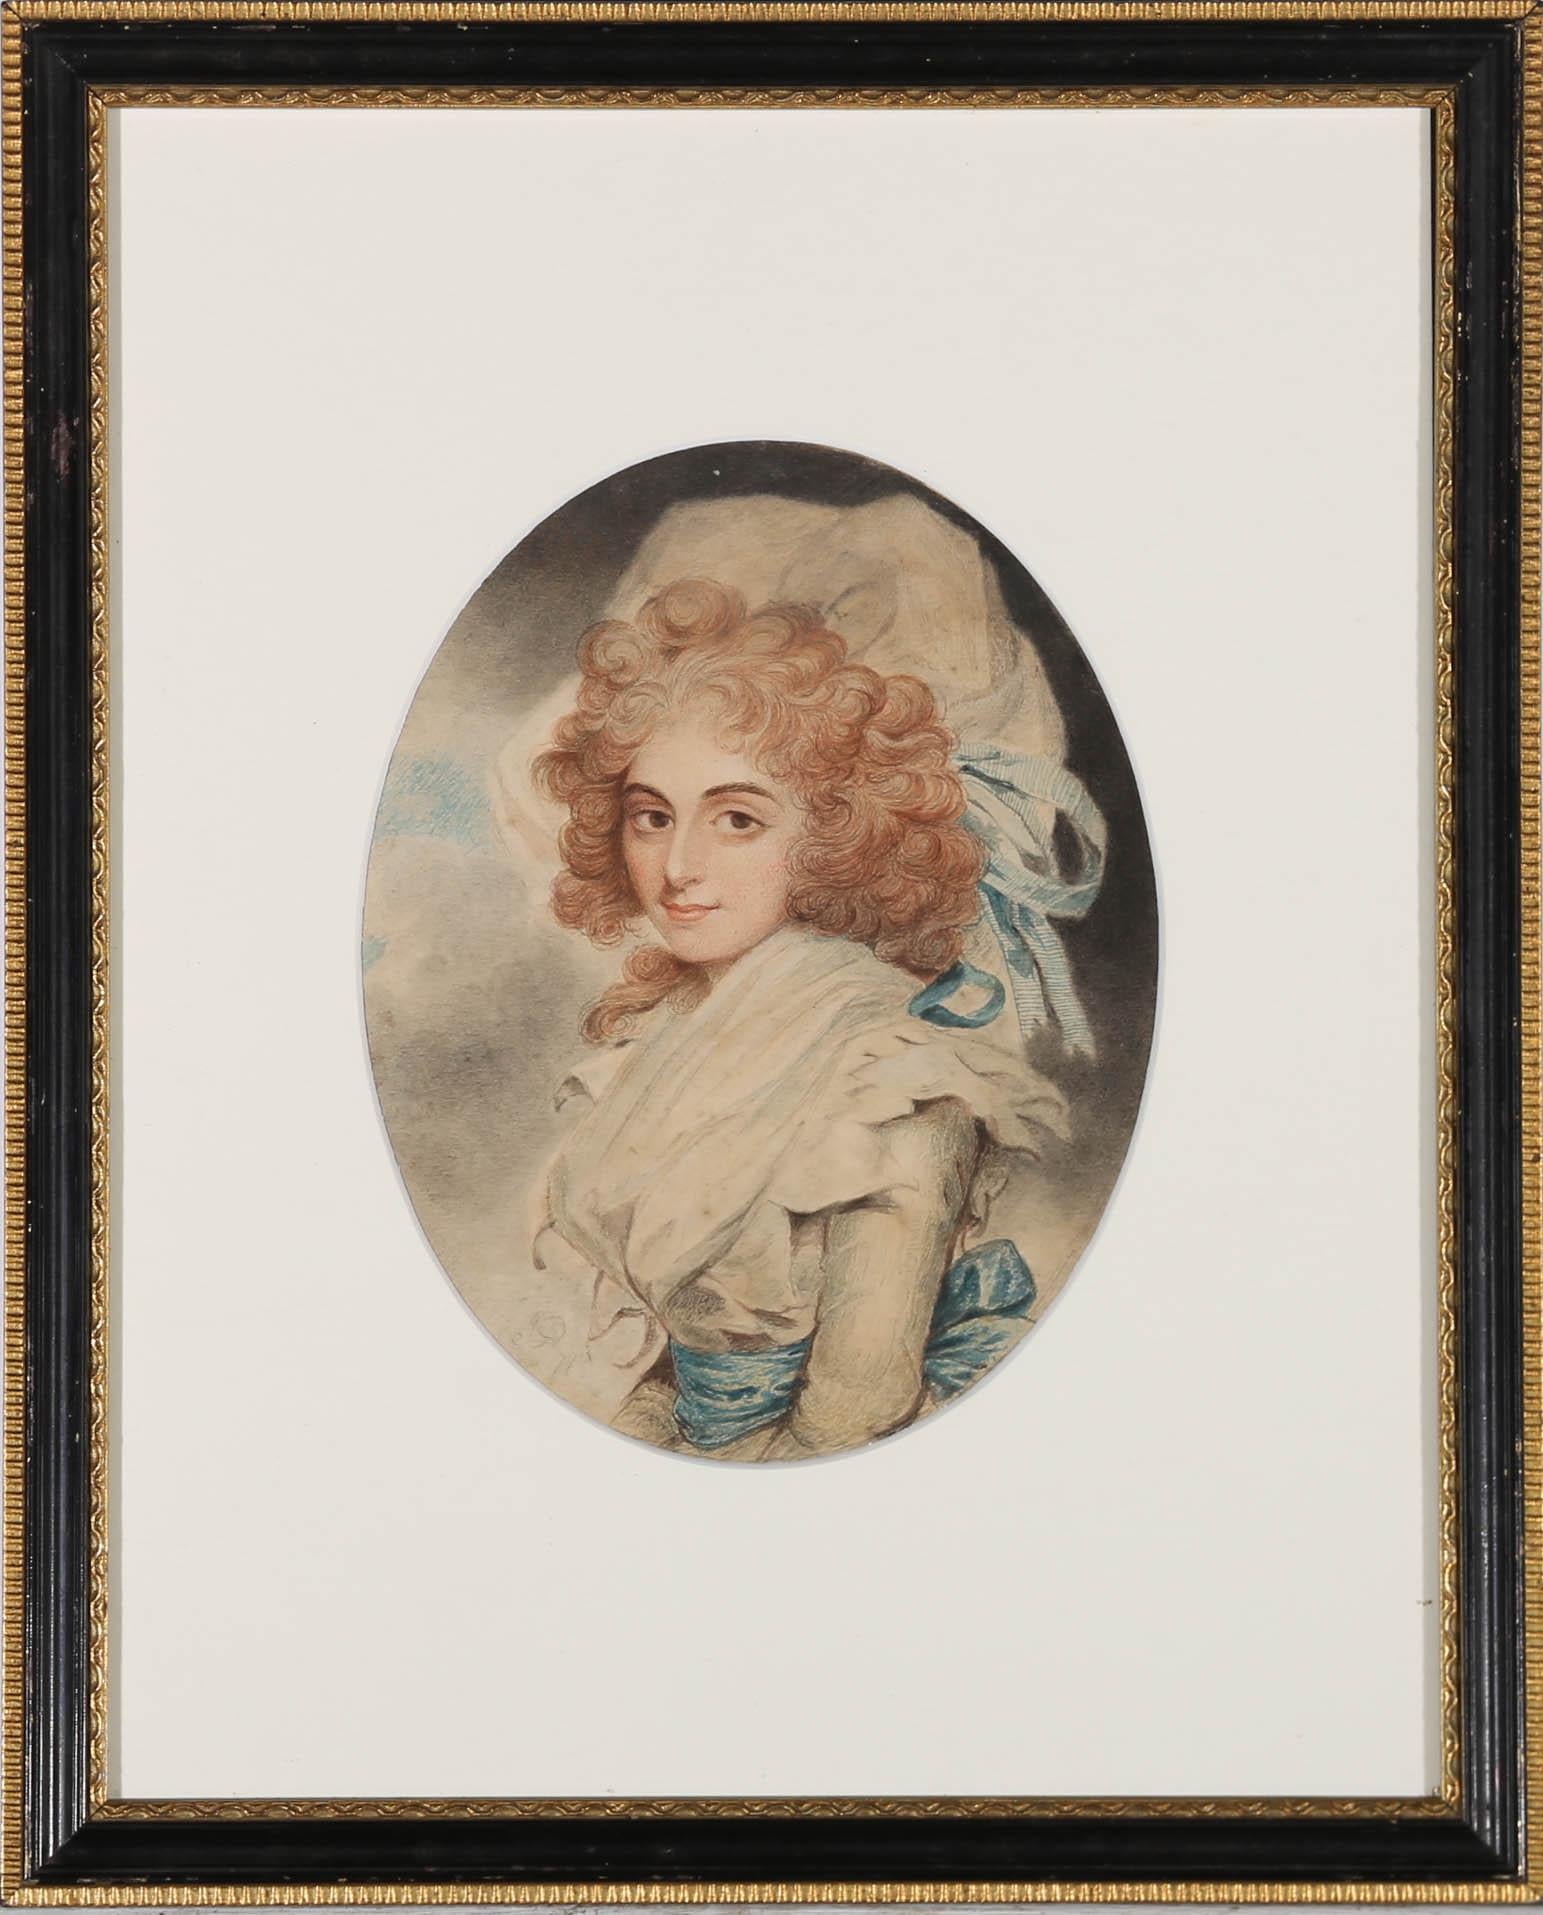 Dieses gelungene Aquarell ist eine schöne Kopie von John Downmans Porträt von Sarah Siddons. Die im frühen 19. Jahrhundert gemalten Aquarelle sind eine zeitgenössische Studie von Downmans Werk. Das Originalaquarell wurde vom 3. Herzog von Richmond